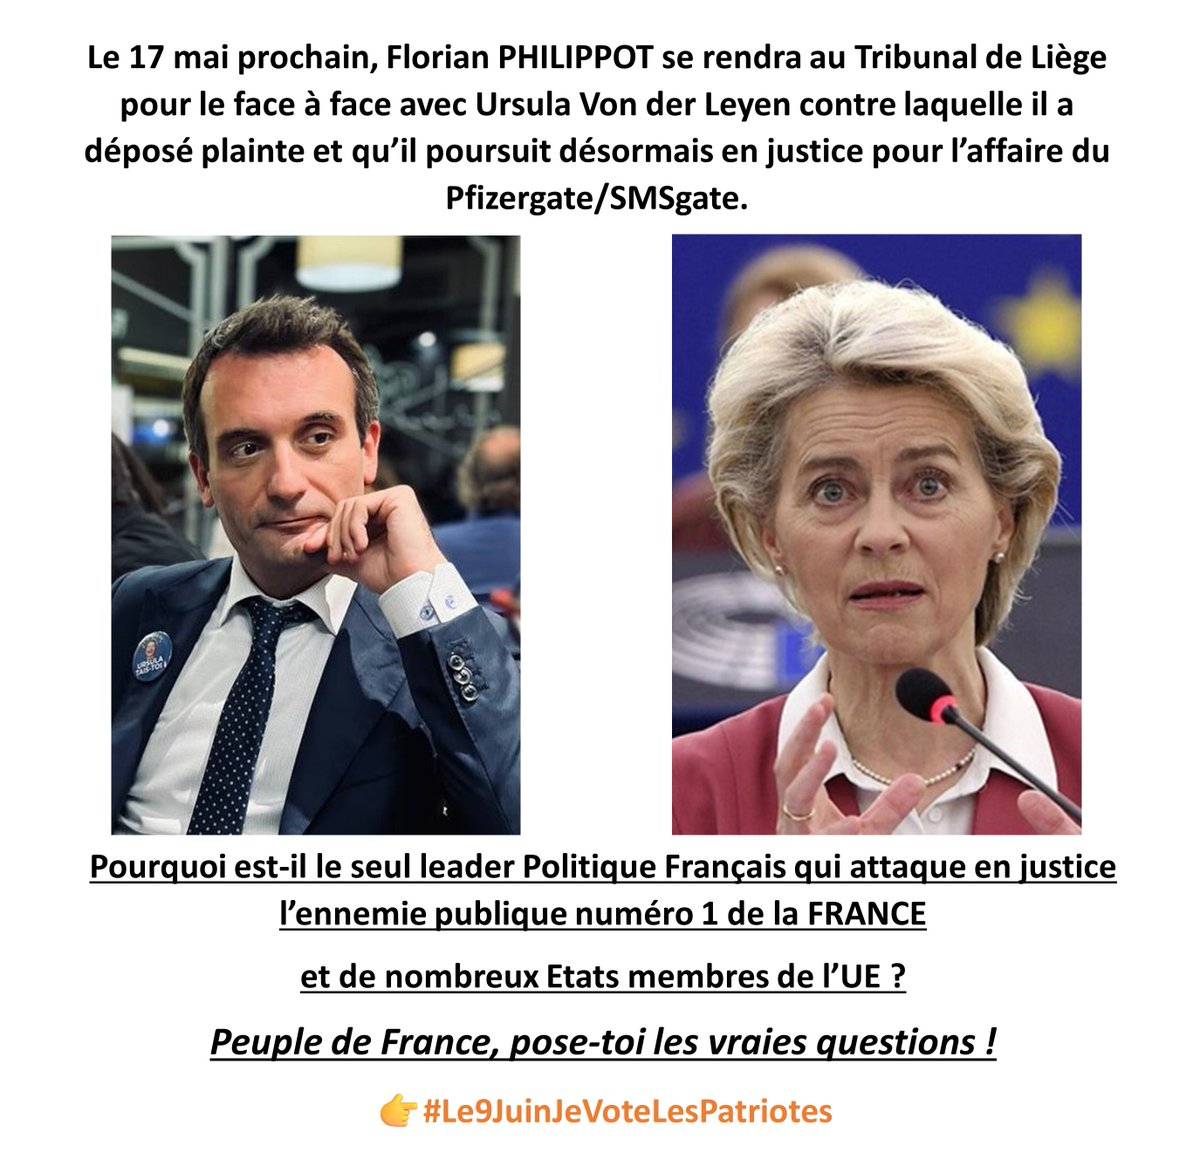 Demain Florian Philippot fera face à l'ennemie publique numéro 1 de la France.
C'est le seul homme Politique qui en ait le courage !
Le seul qui fasse passer le bien commun des Français avant lui-même !
D'après vous, pourquoi ?
👉#Le9JuinJeVoteLesPatriotes🇫🇷
👉#LEuropeÇaSuffit🇫🇷